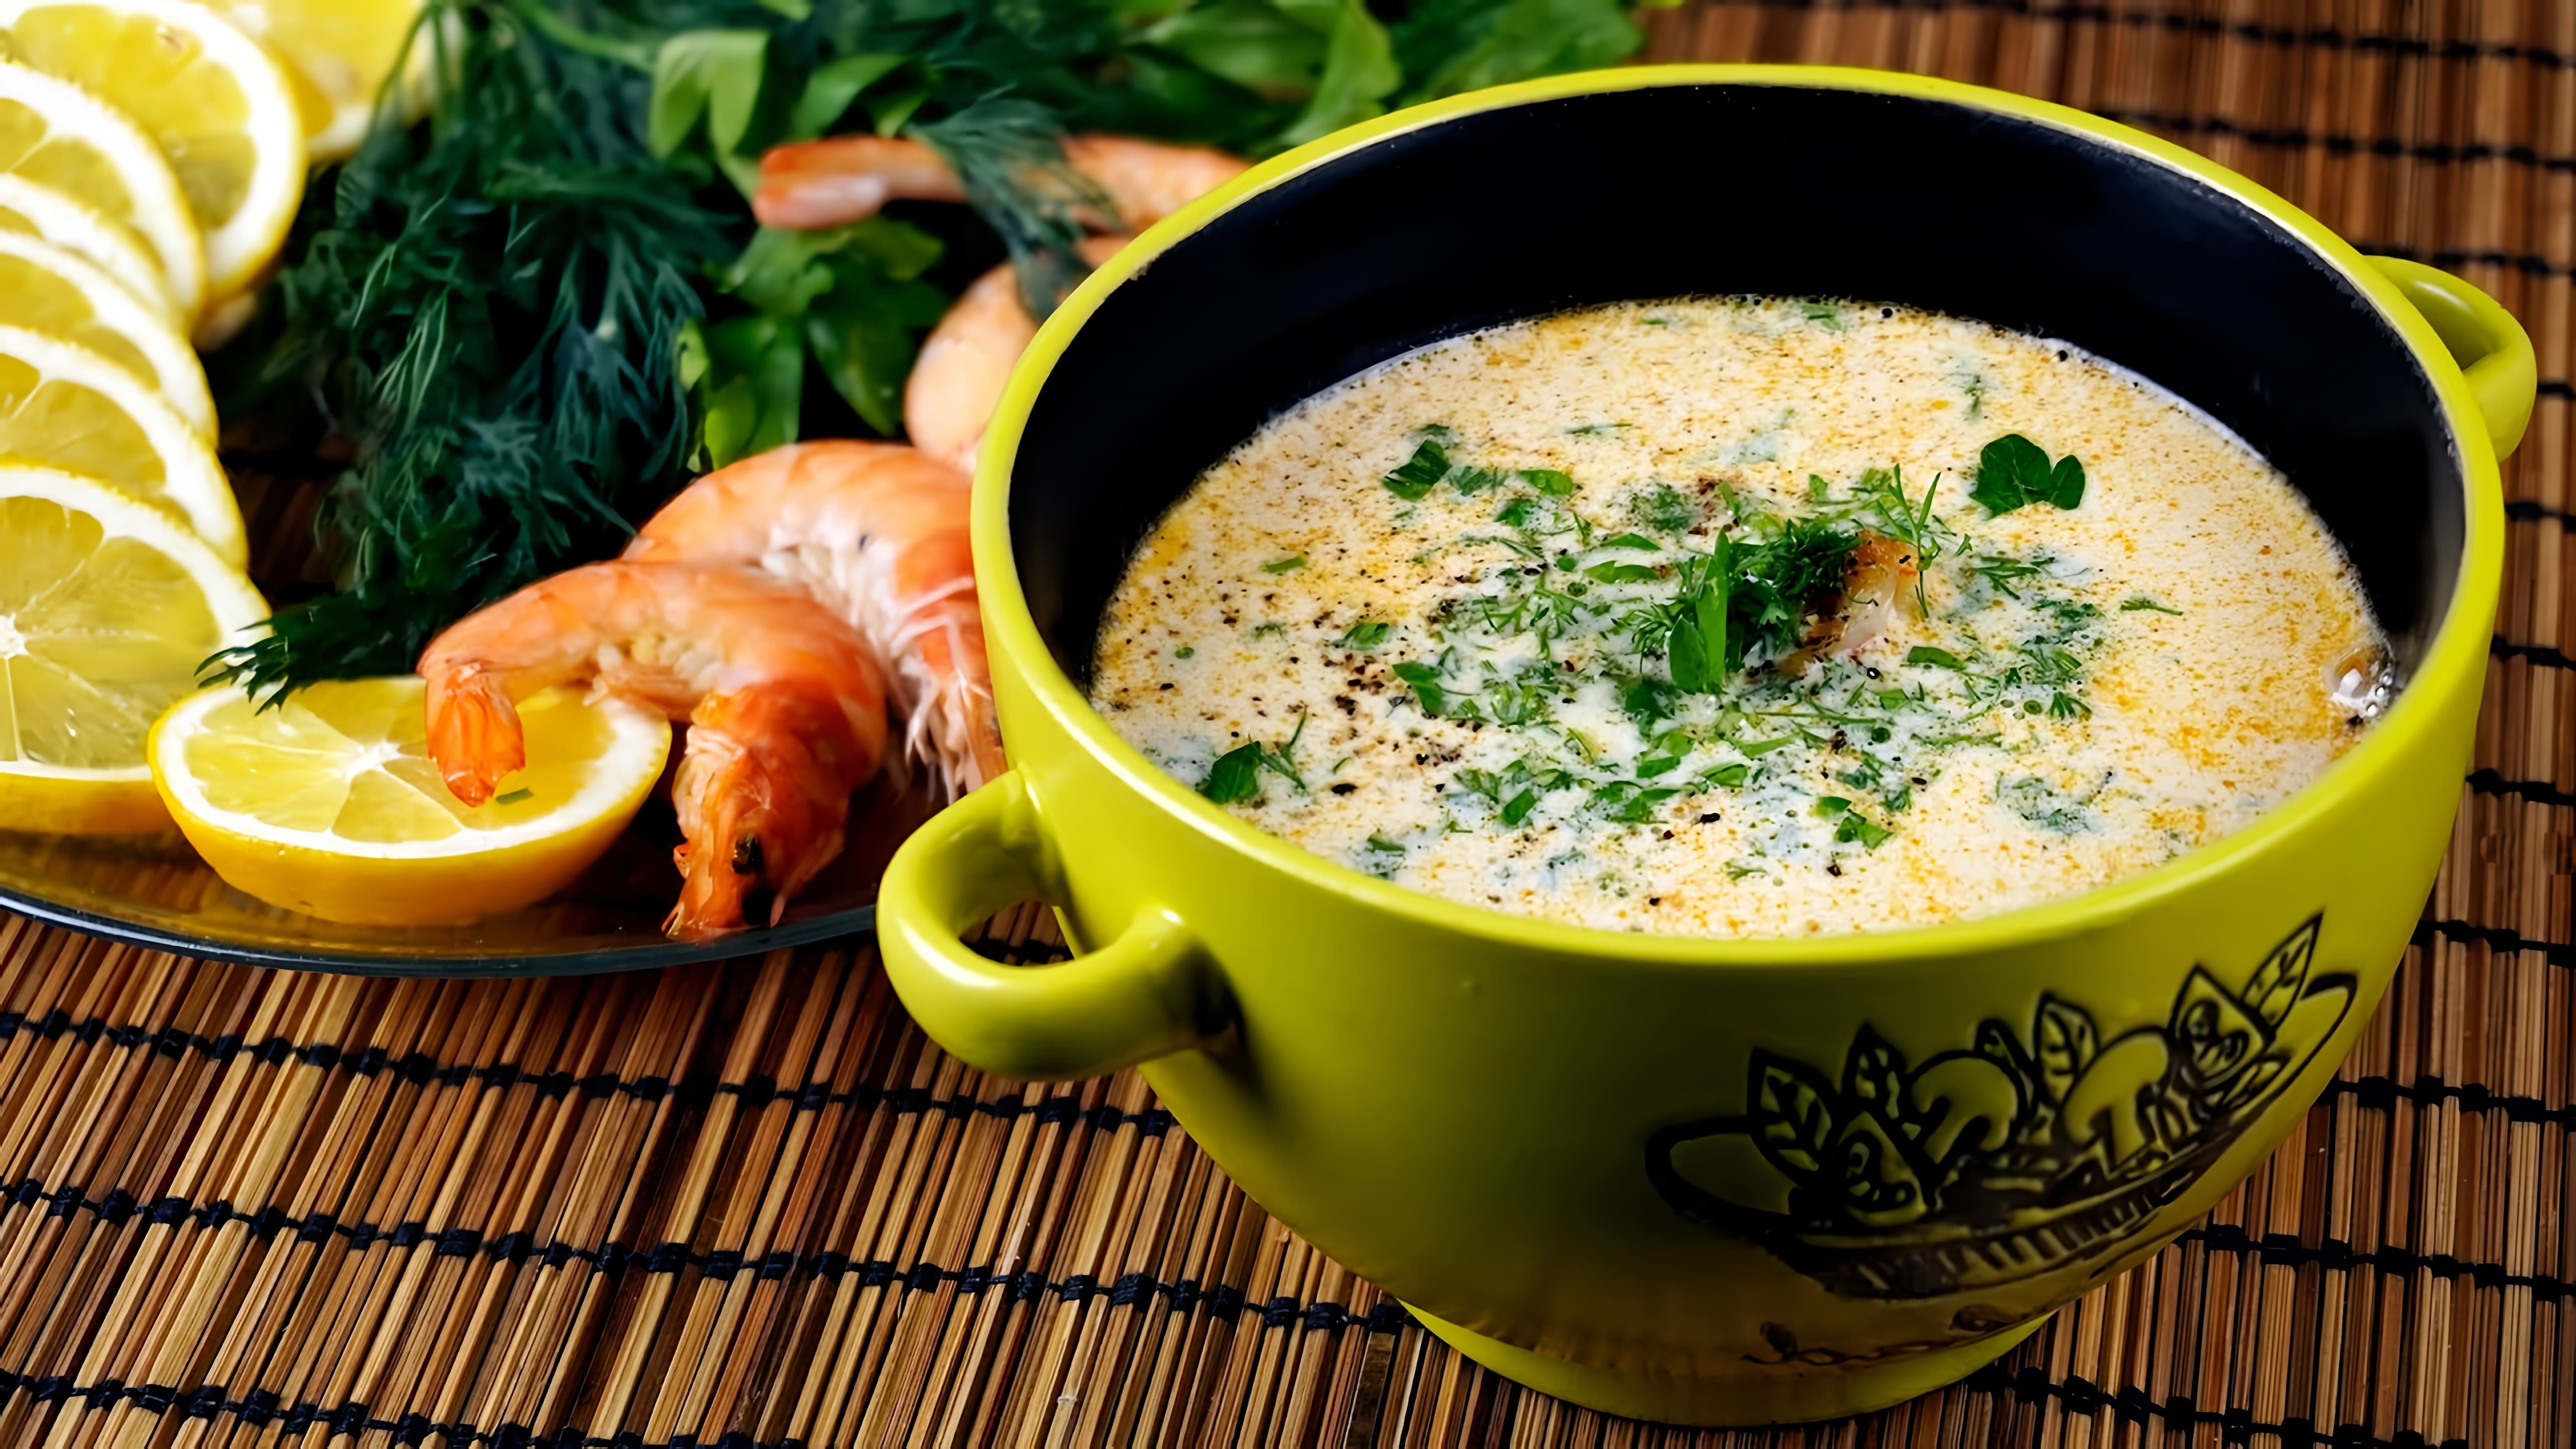 В этом видео демонстрируется рецепт тайского супа с креветками